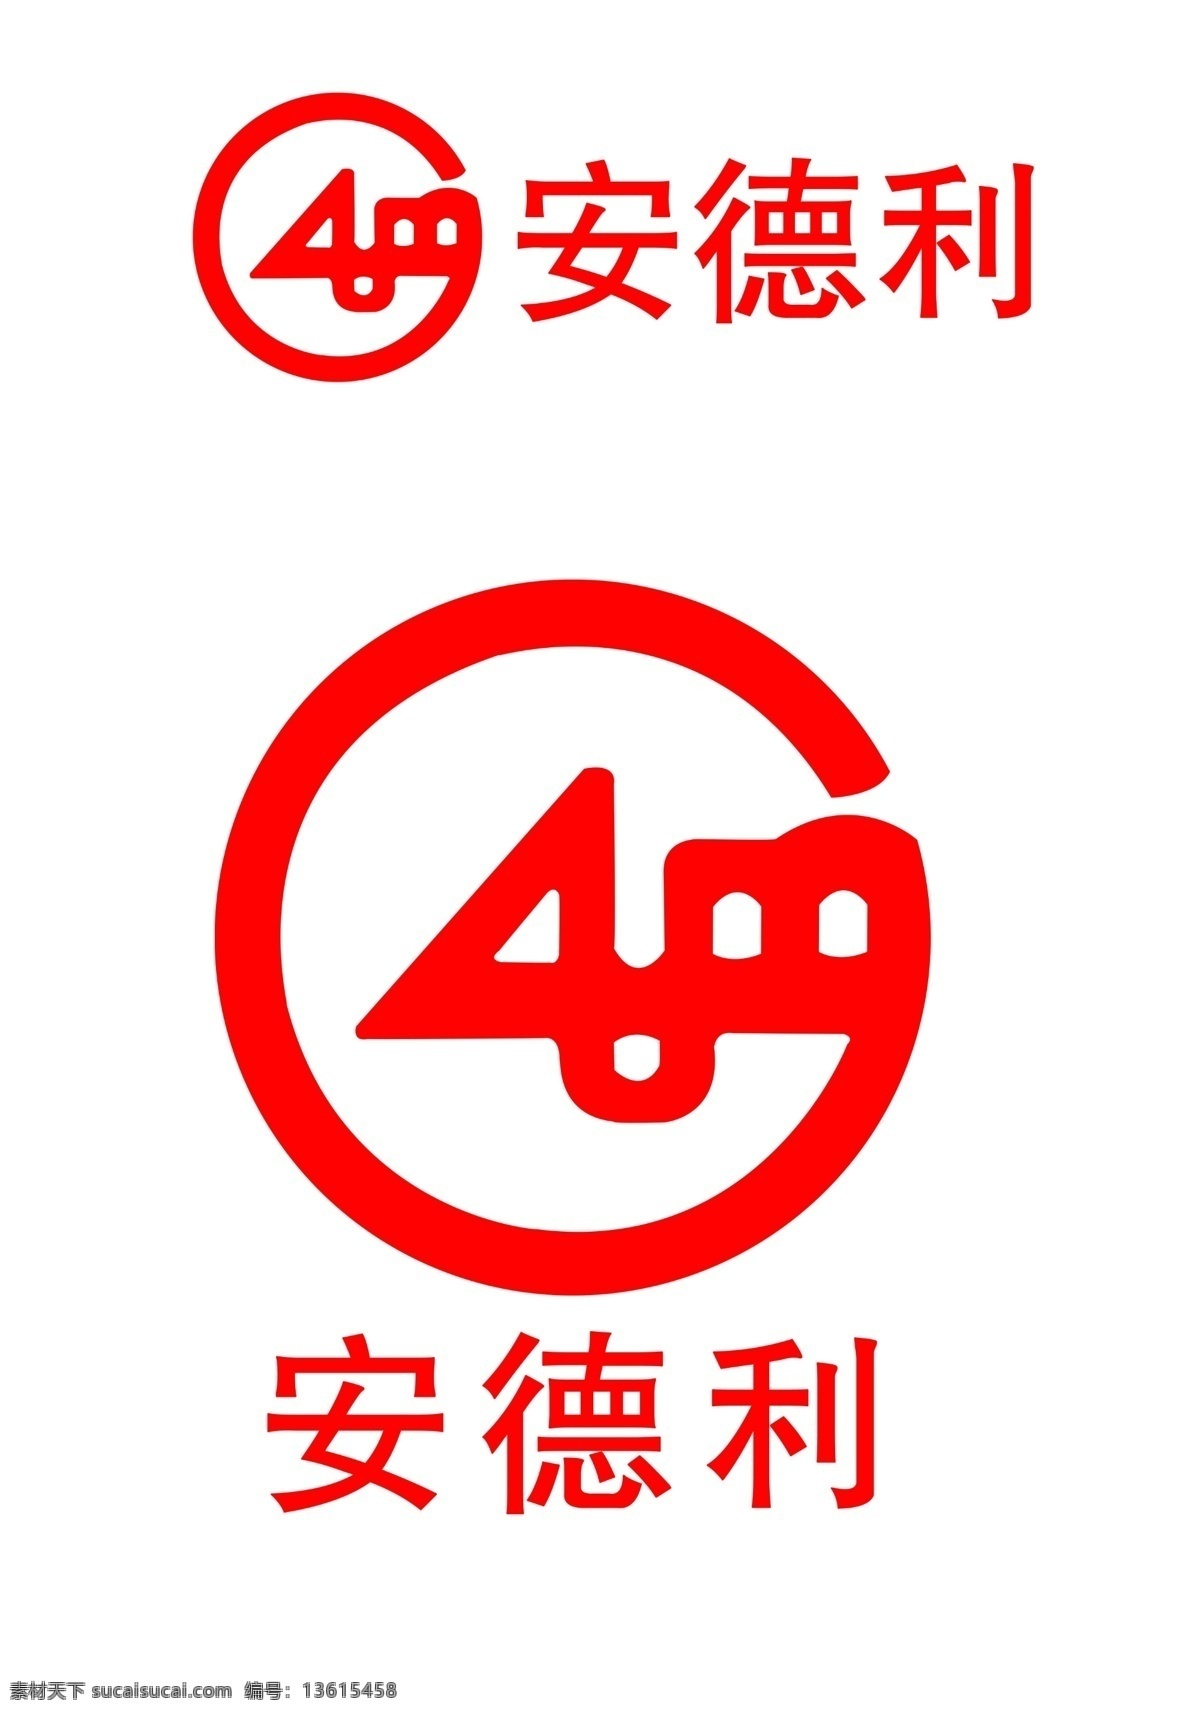 安德利 标志 logo 安德利标志 商场logo 标志图标 企业